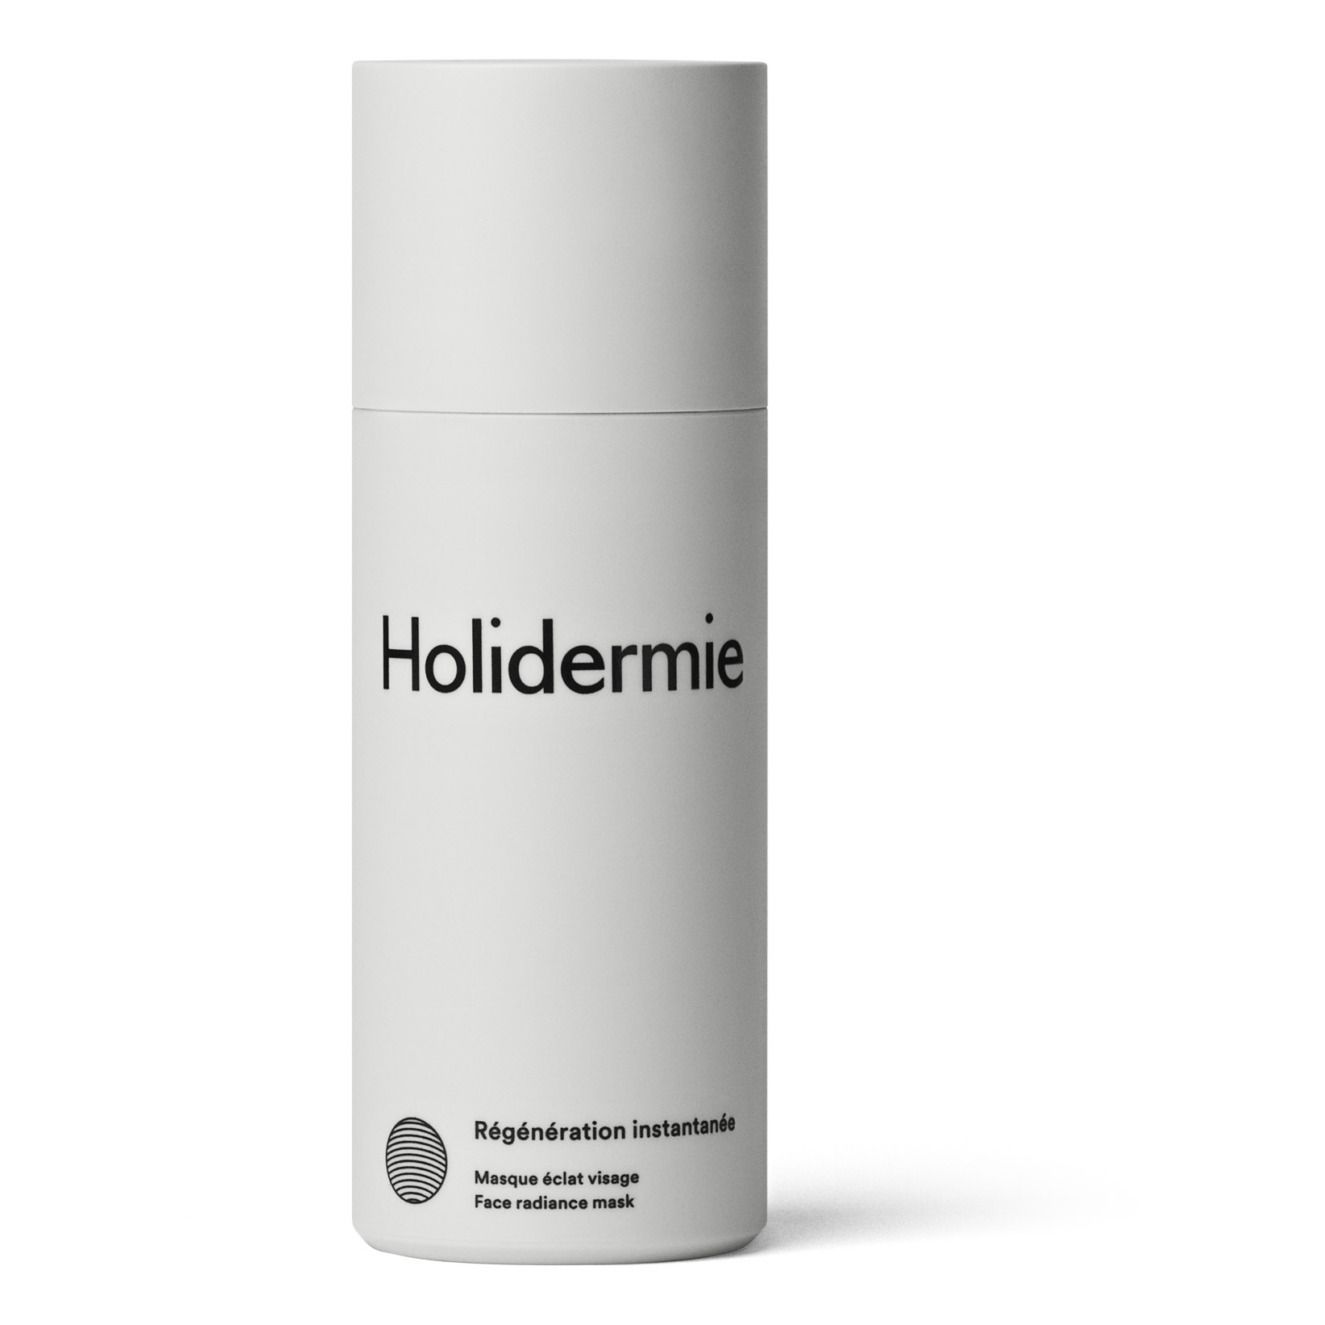 Holidermie - Masque éclat visage Régénération instantanée - 50 ml - Blanc